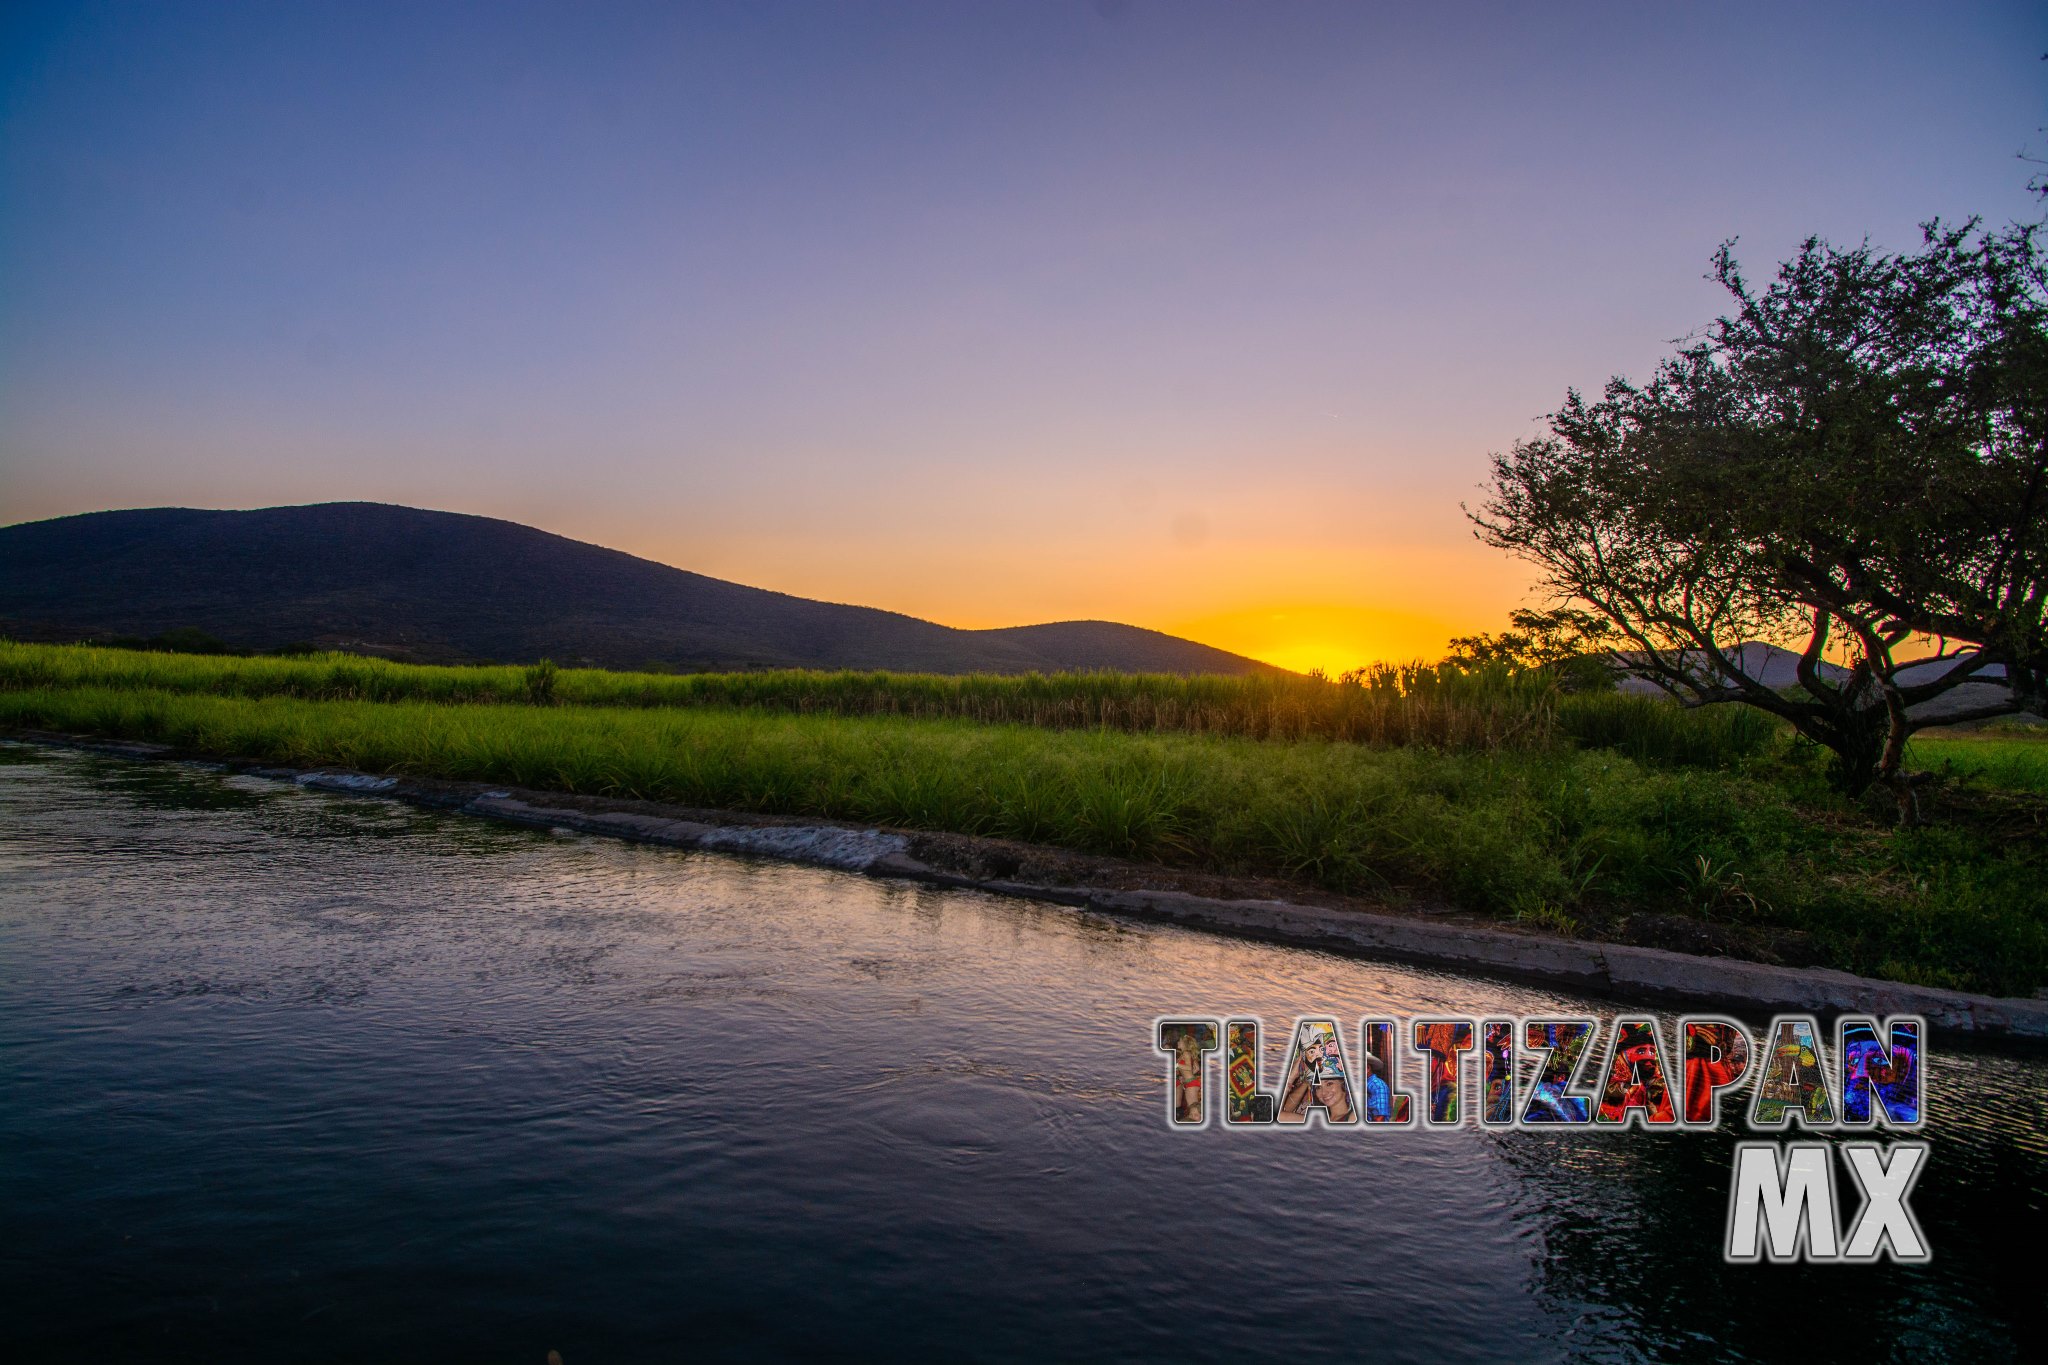 El canal de riego en Tlaltizapán, Morelos 07 de Marzo del 2019 | Colecciones multimedia | Tlaltizapan.mx